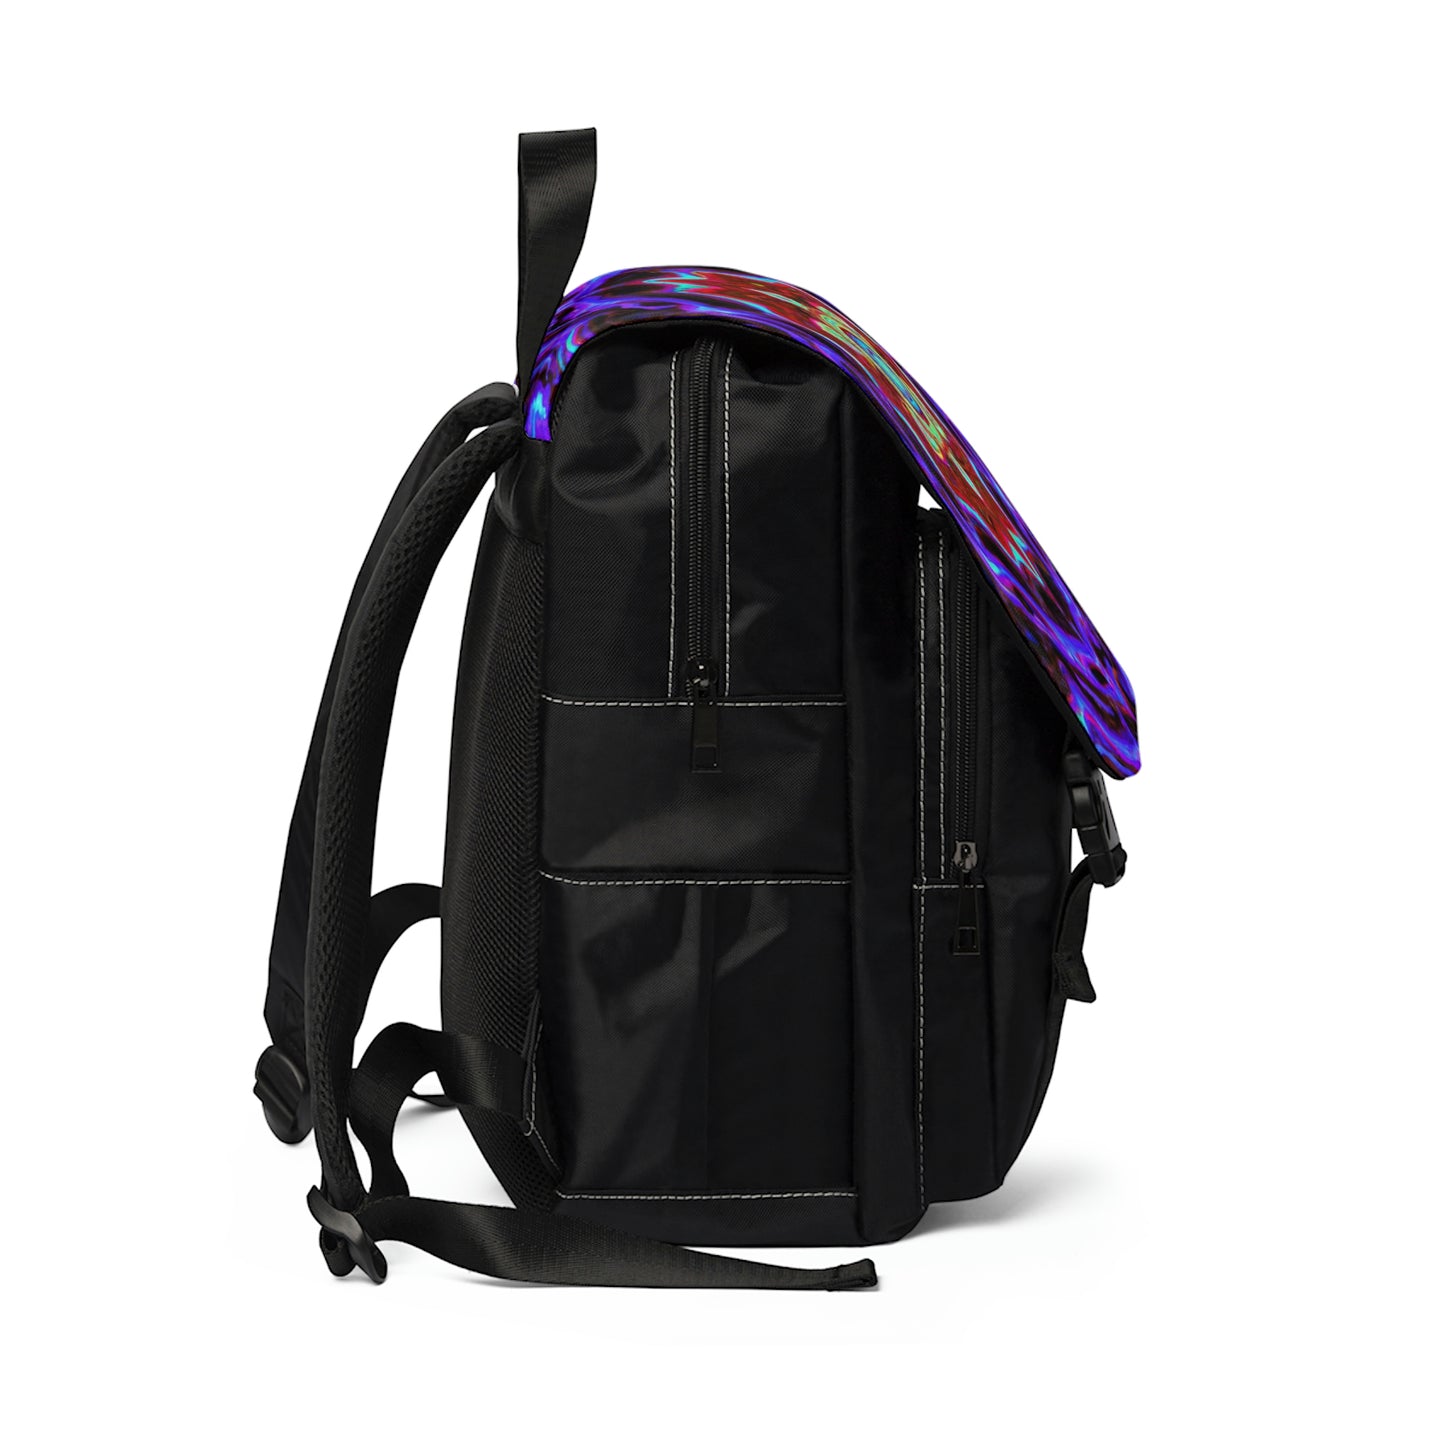 Delilah - Psychedelic Shoulder Travel Backpack Bag